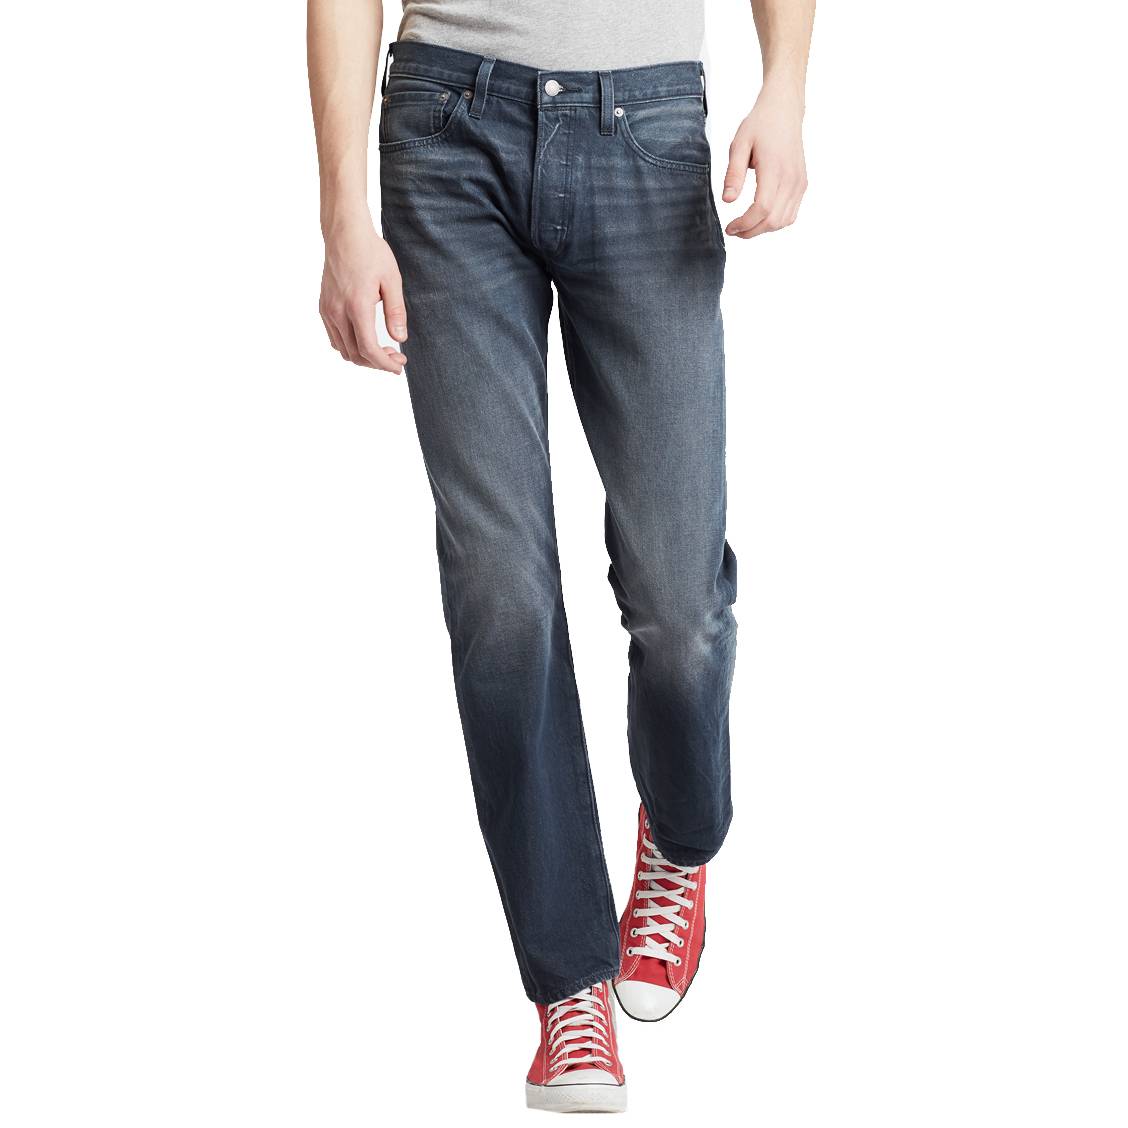 Vente > jeans levi's 501 homme délavé > en stock